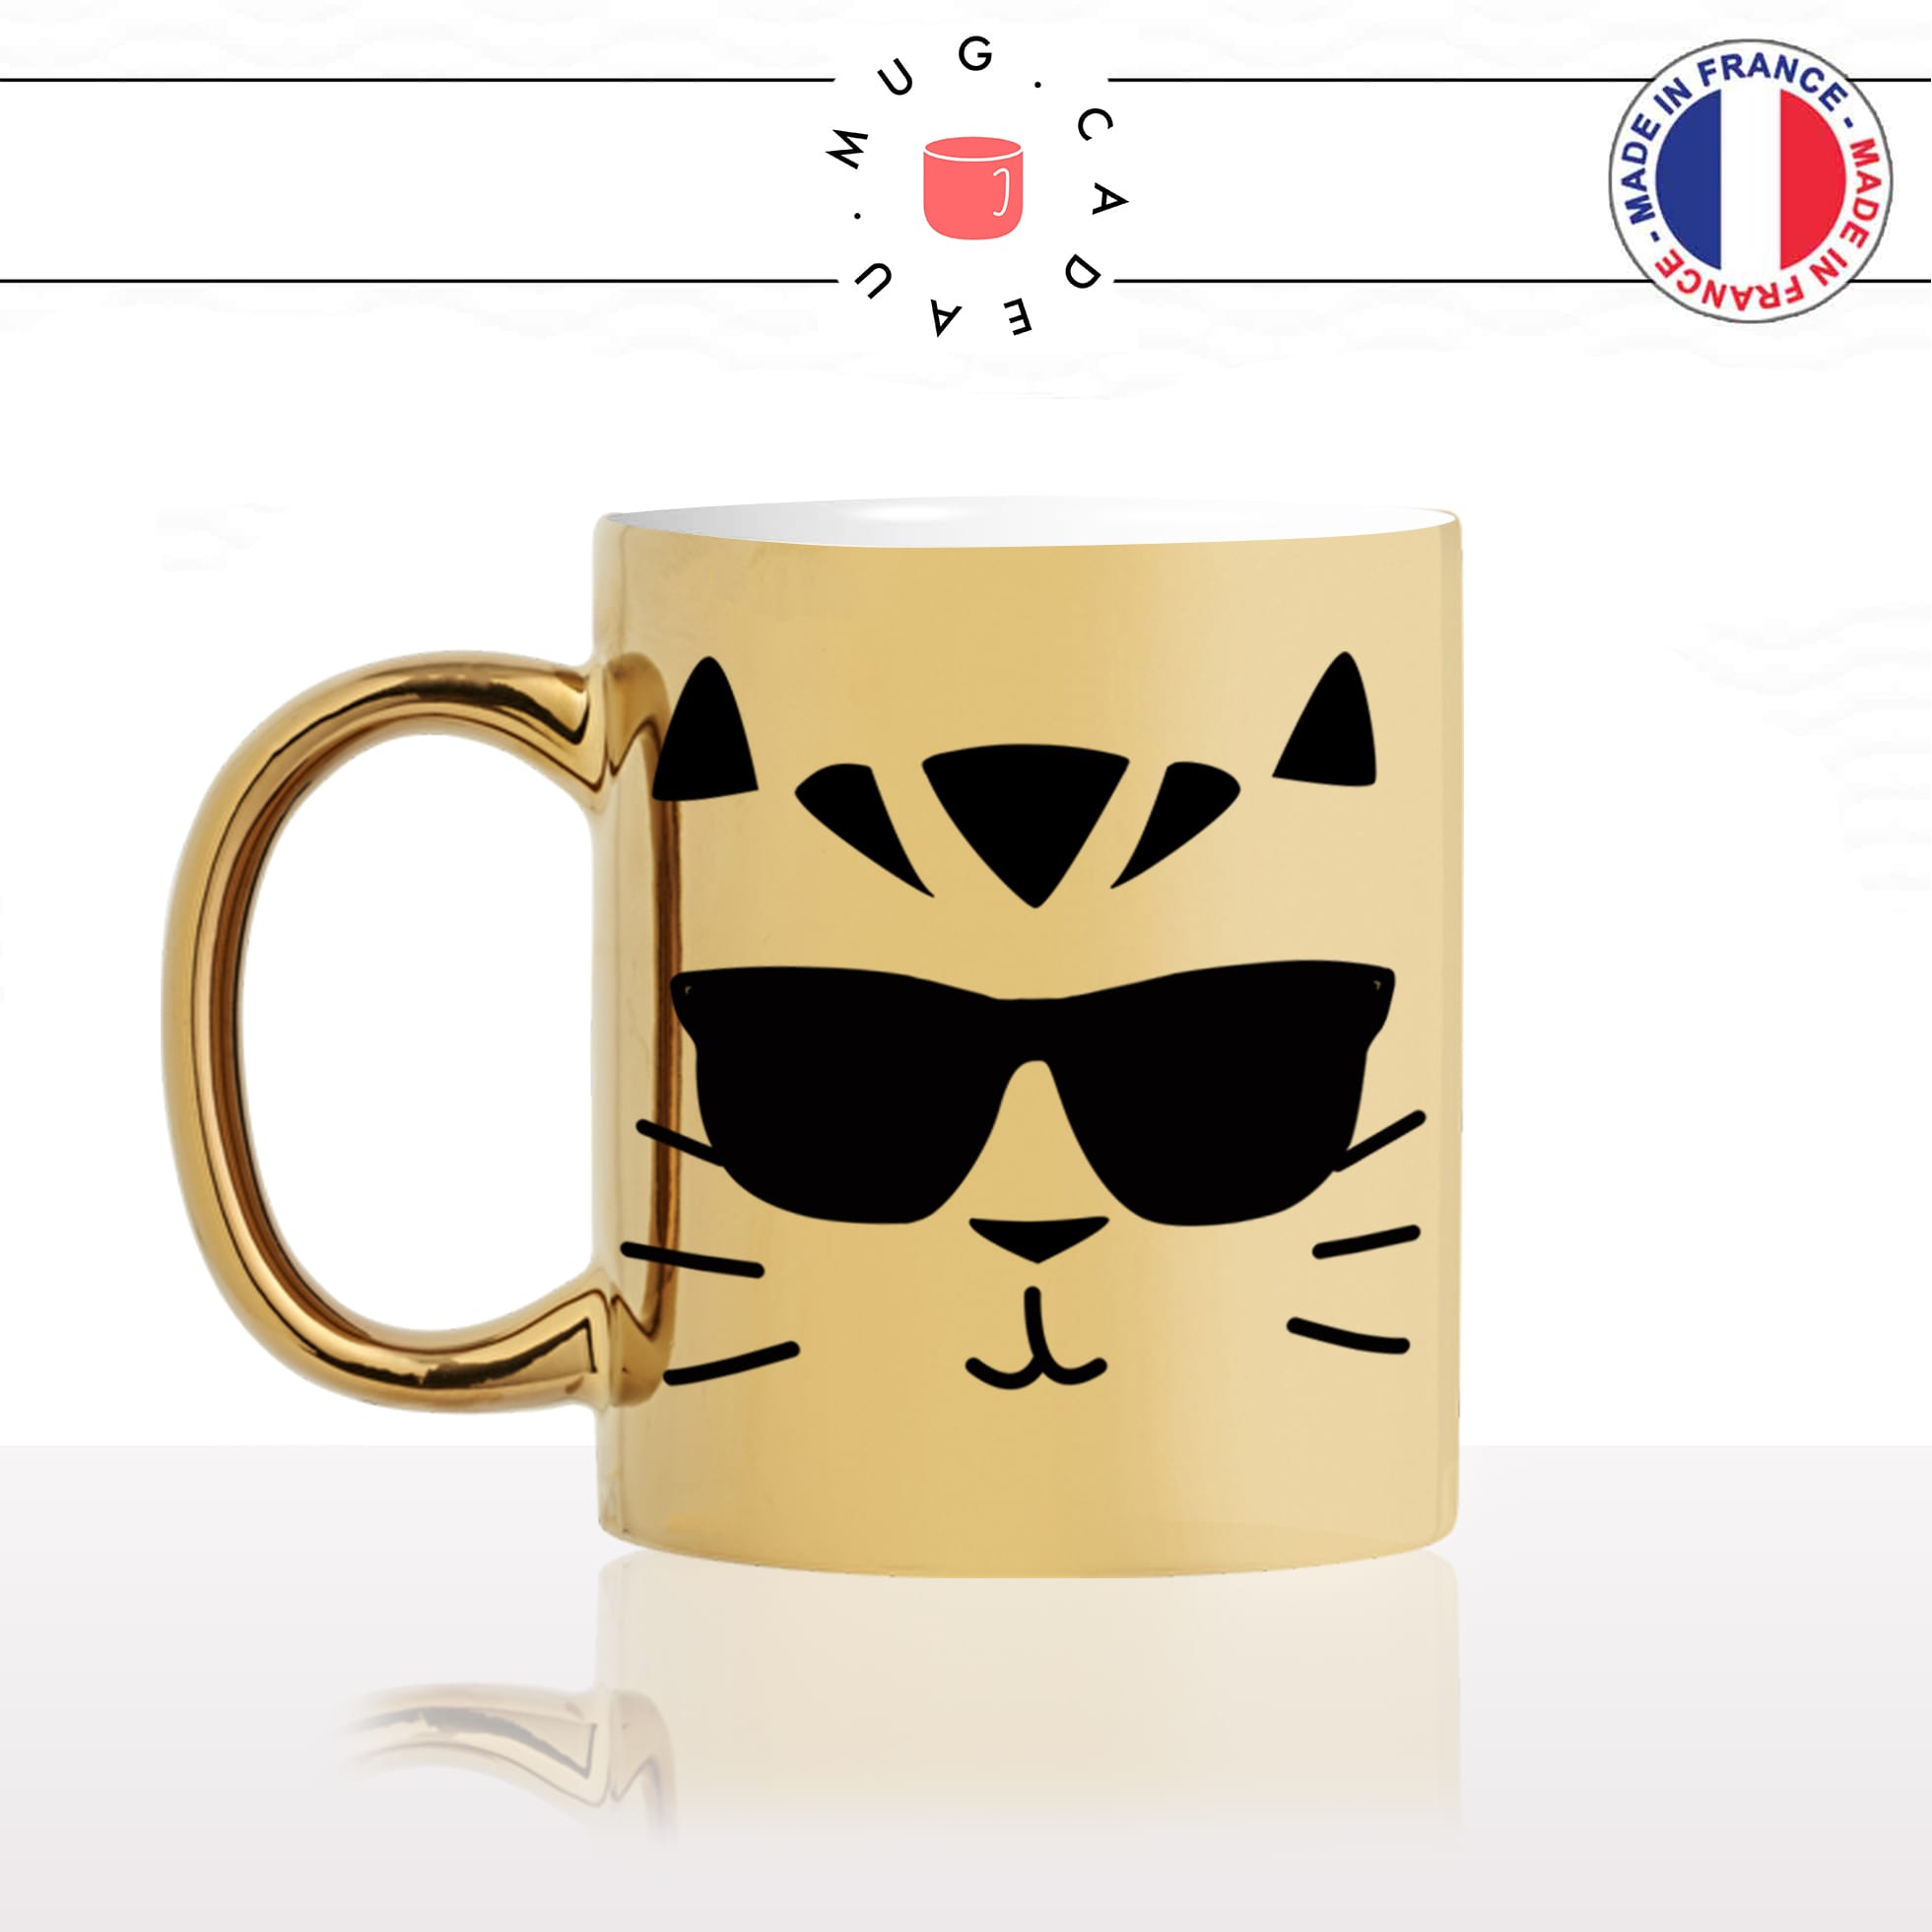 mug-tasse-or-doré-tete-de-chat-lunettes-de-soleil-cool-mignon-animal-chaton-noir-fun-café-thé-idée-cadeau-original-personnalisé-gold-min